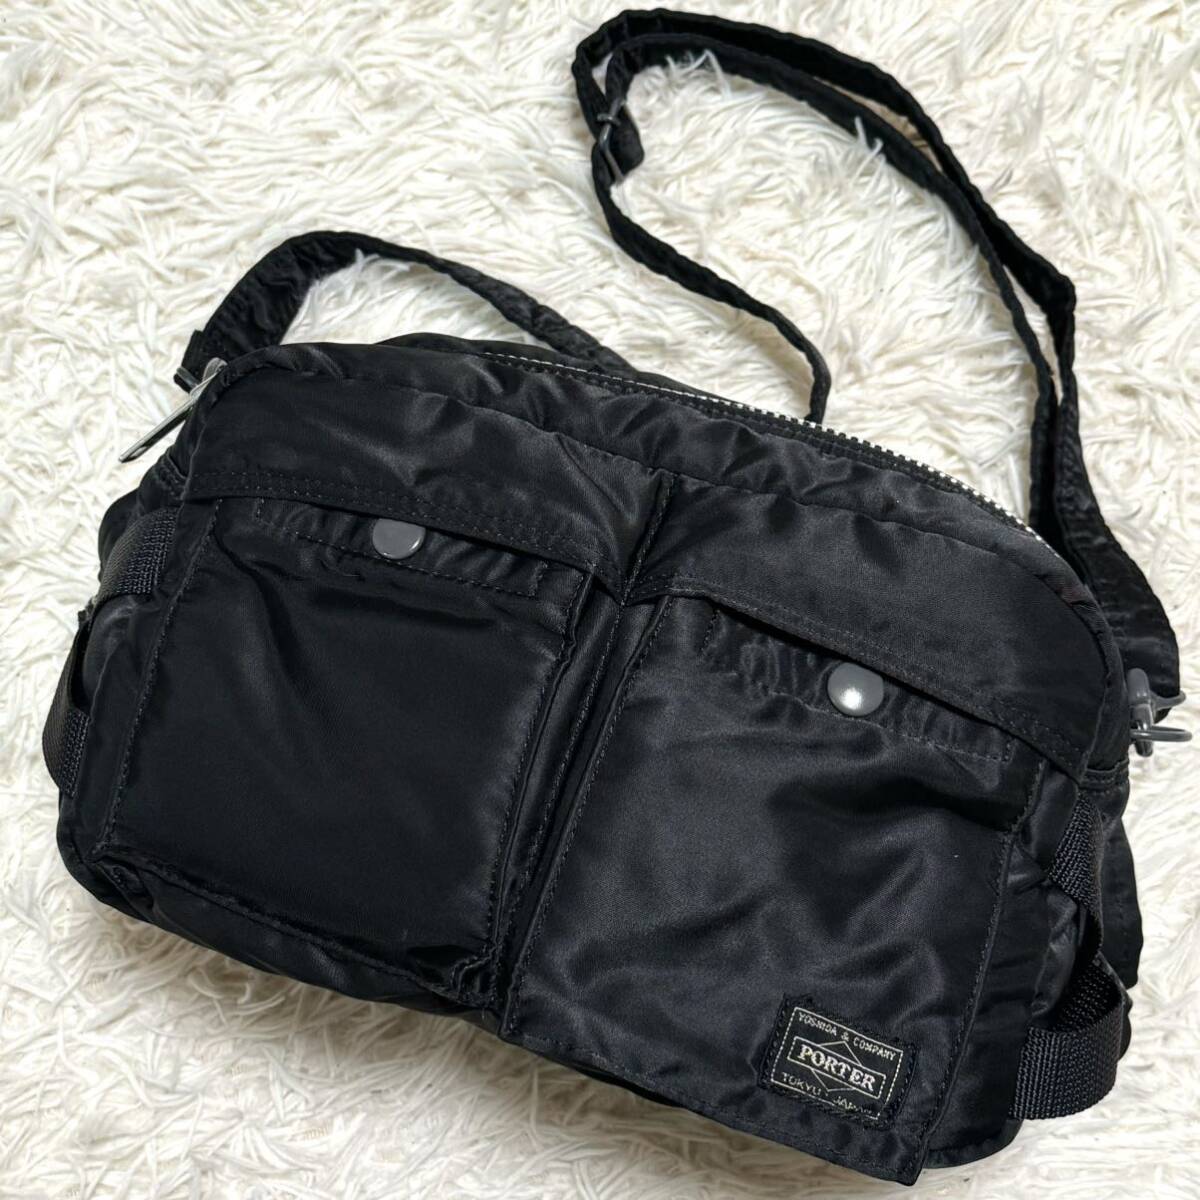  превосходный товар /2way * PORTER Porter Yoshida bag язык машина сумка на плечо сумка "body" поясная сумка бизнес 2 слой нейлон черный чёрный 